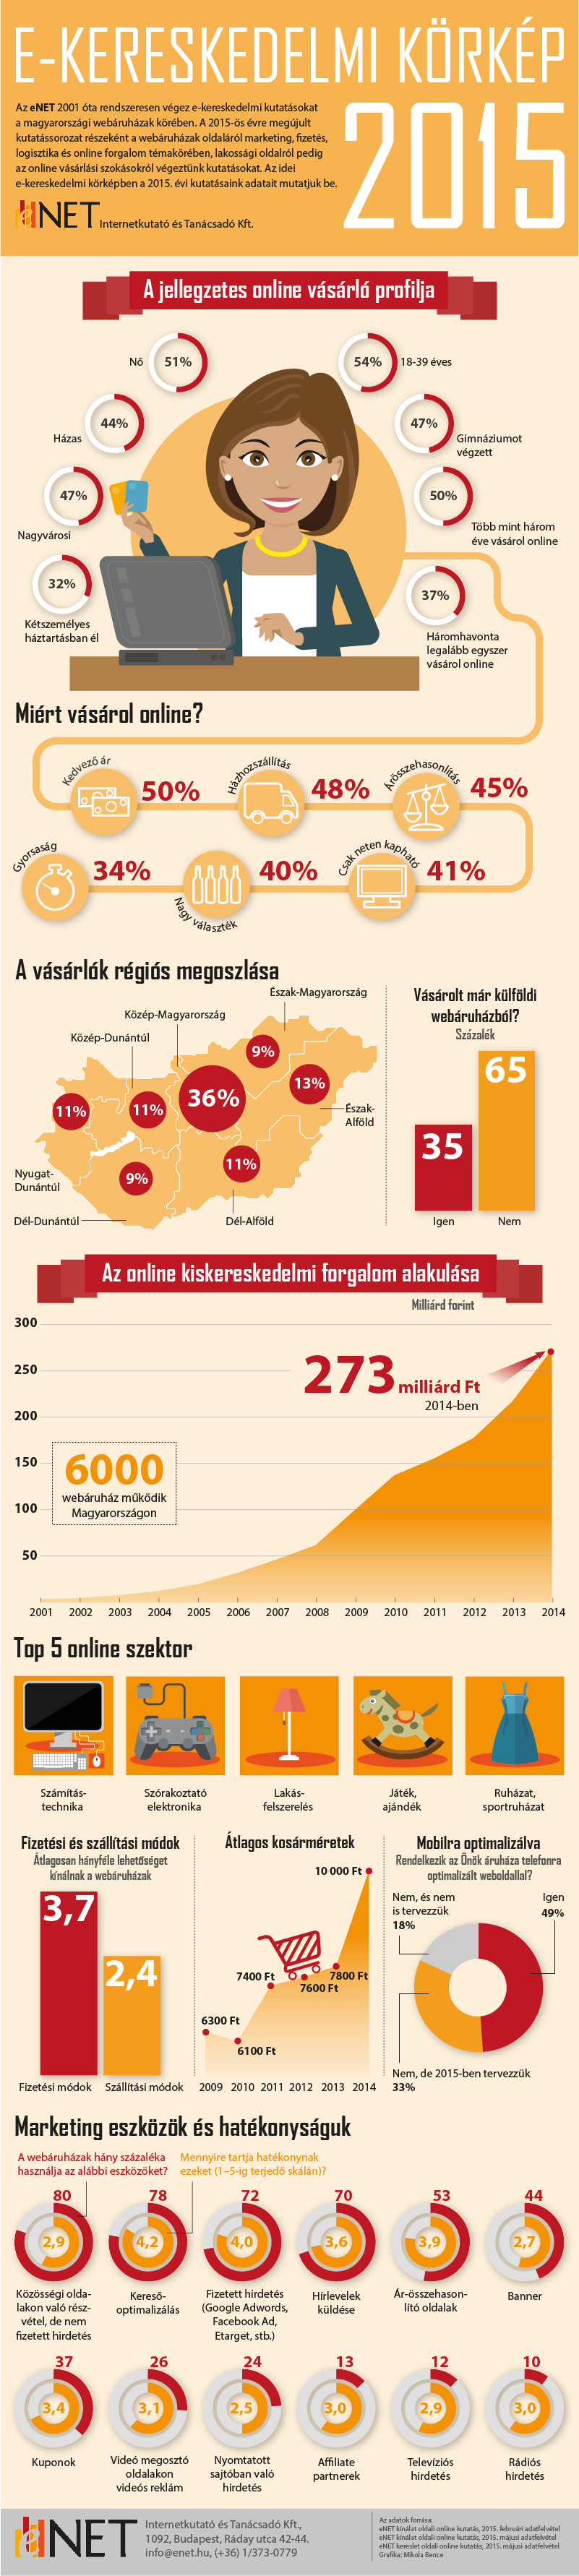 enet_e-ker_korkep_2015_infografika.jpg